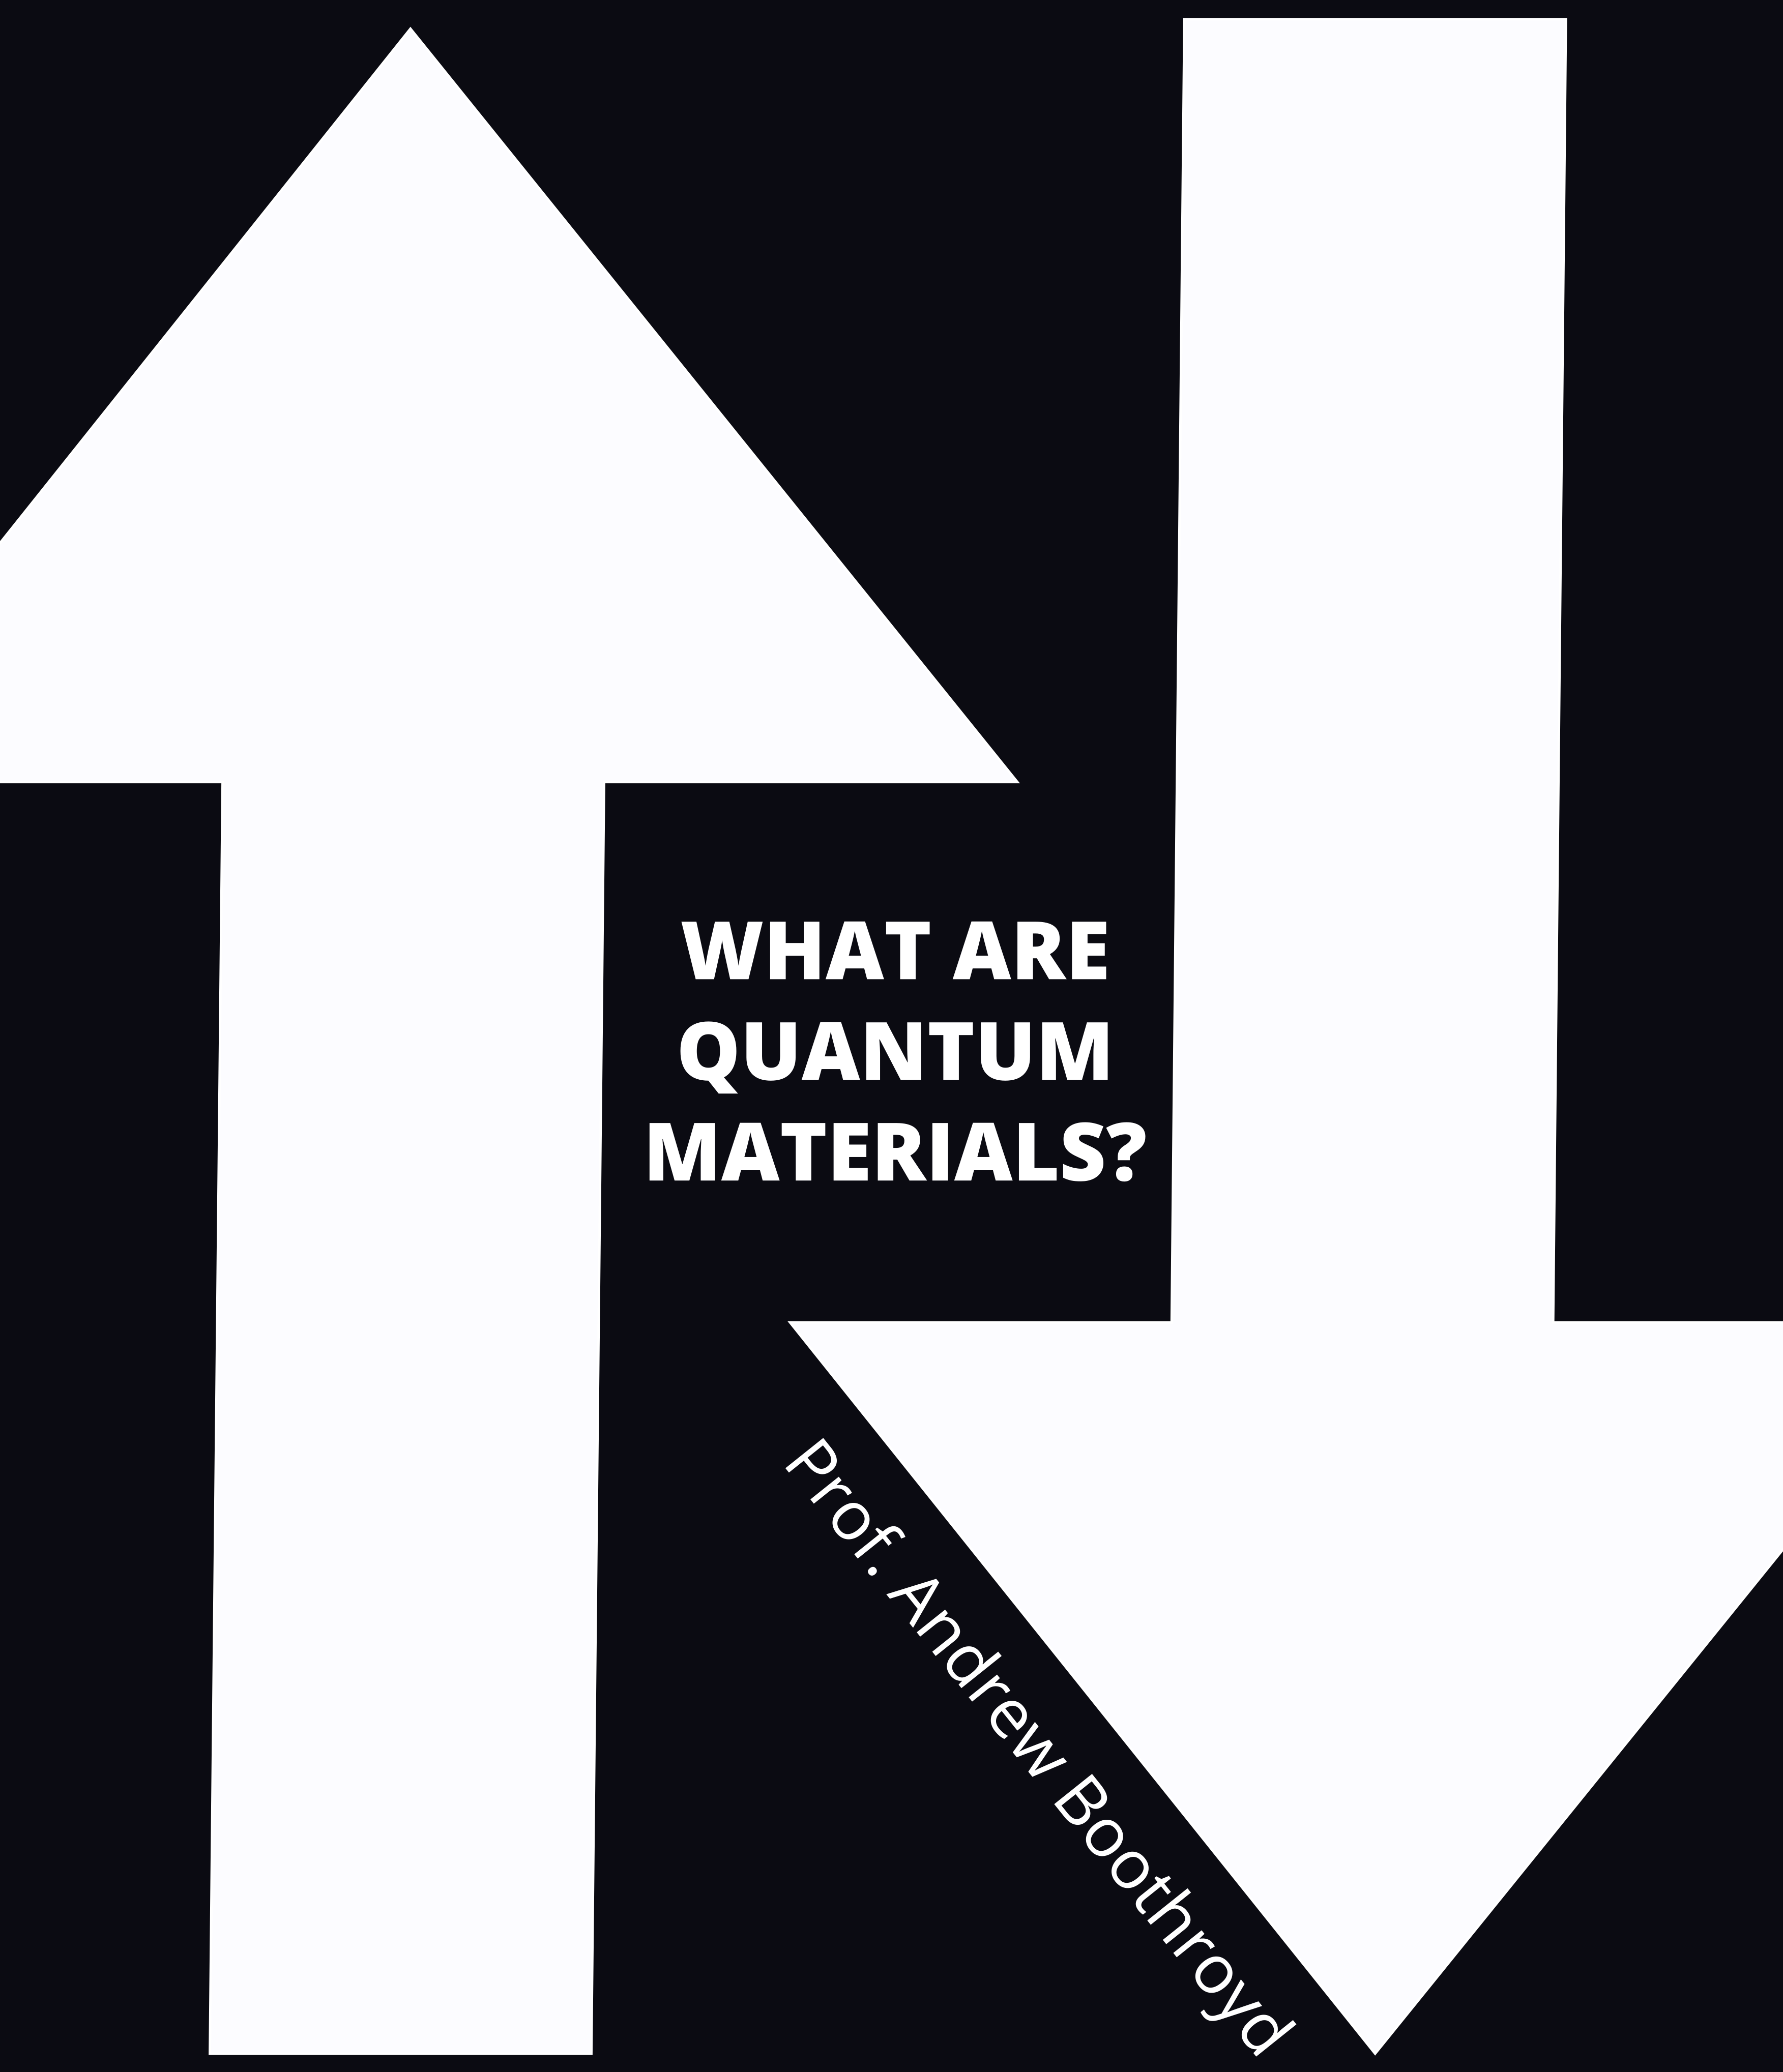 What are Quantum Materials?